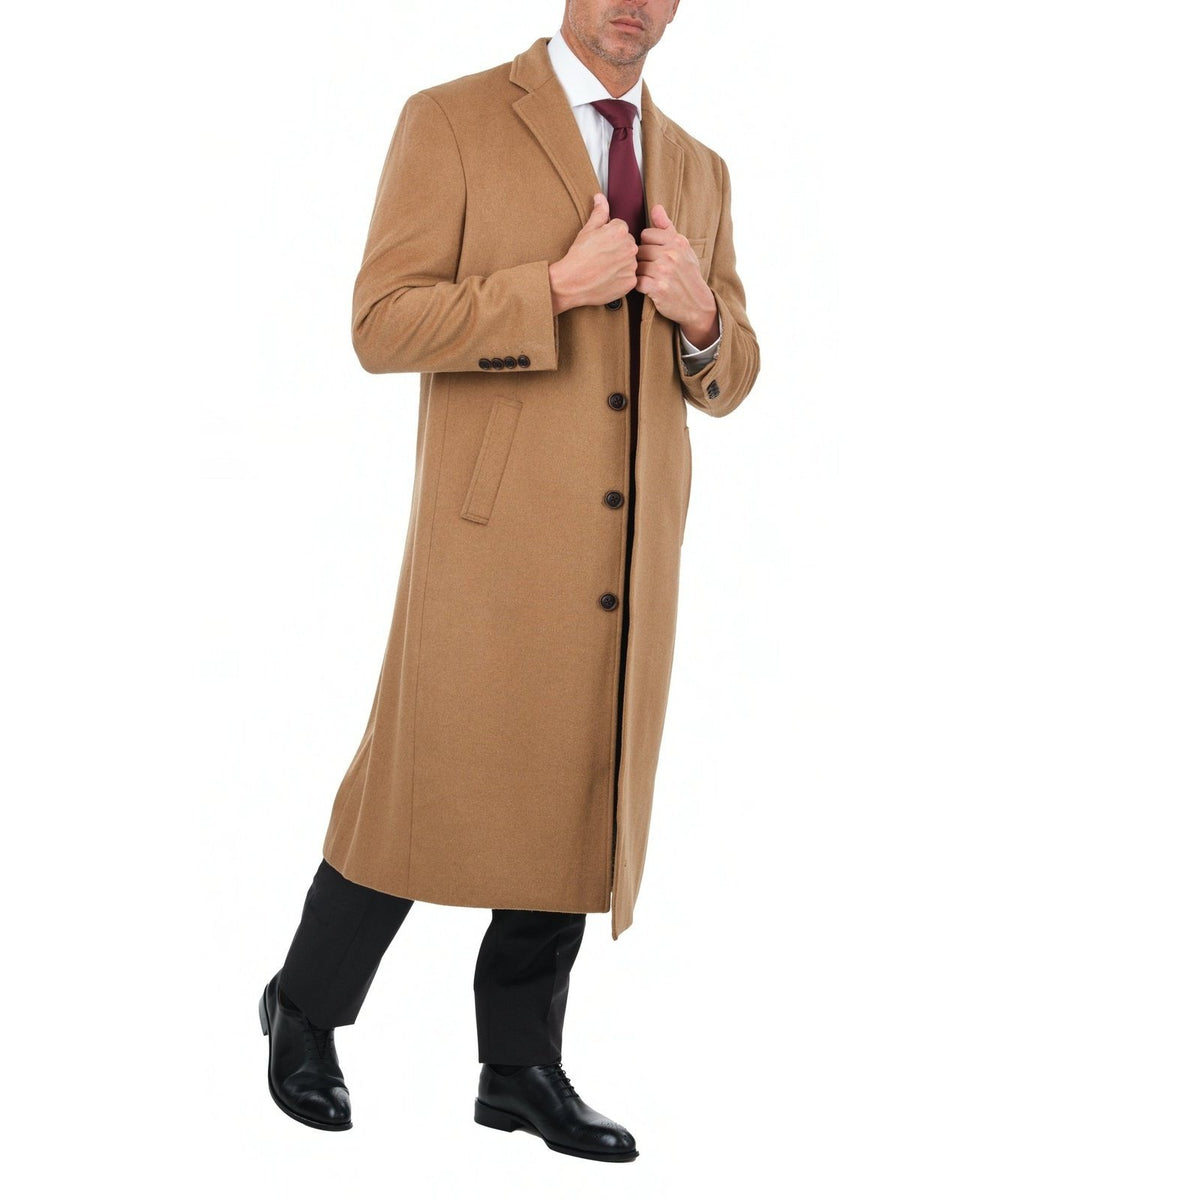 Full Length Long Wool Overcoats for Men's and Women's - Robert W. Stolz